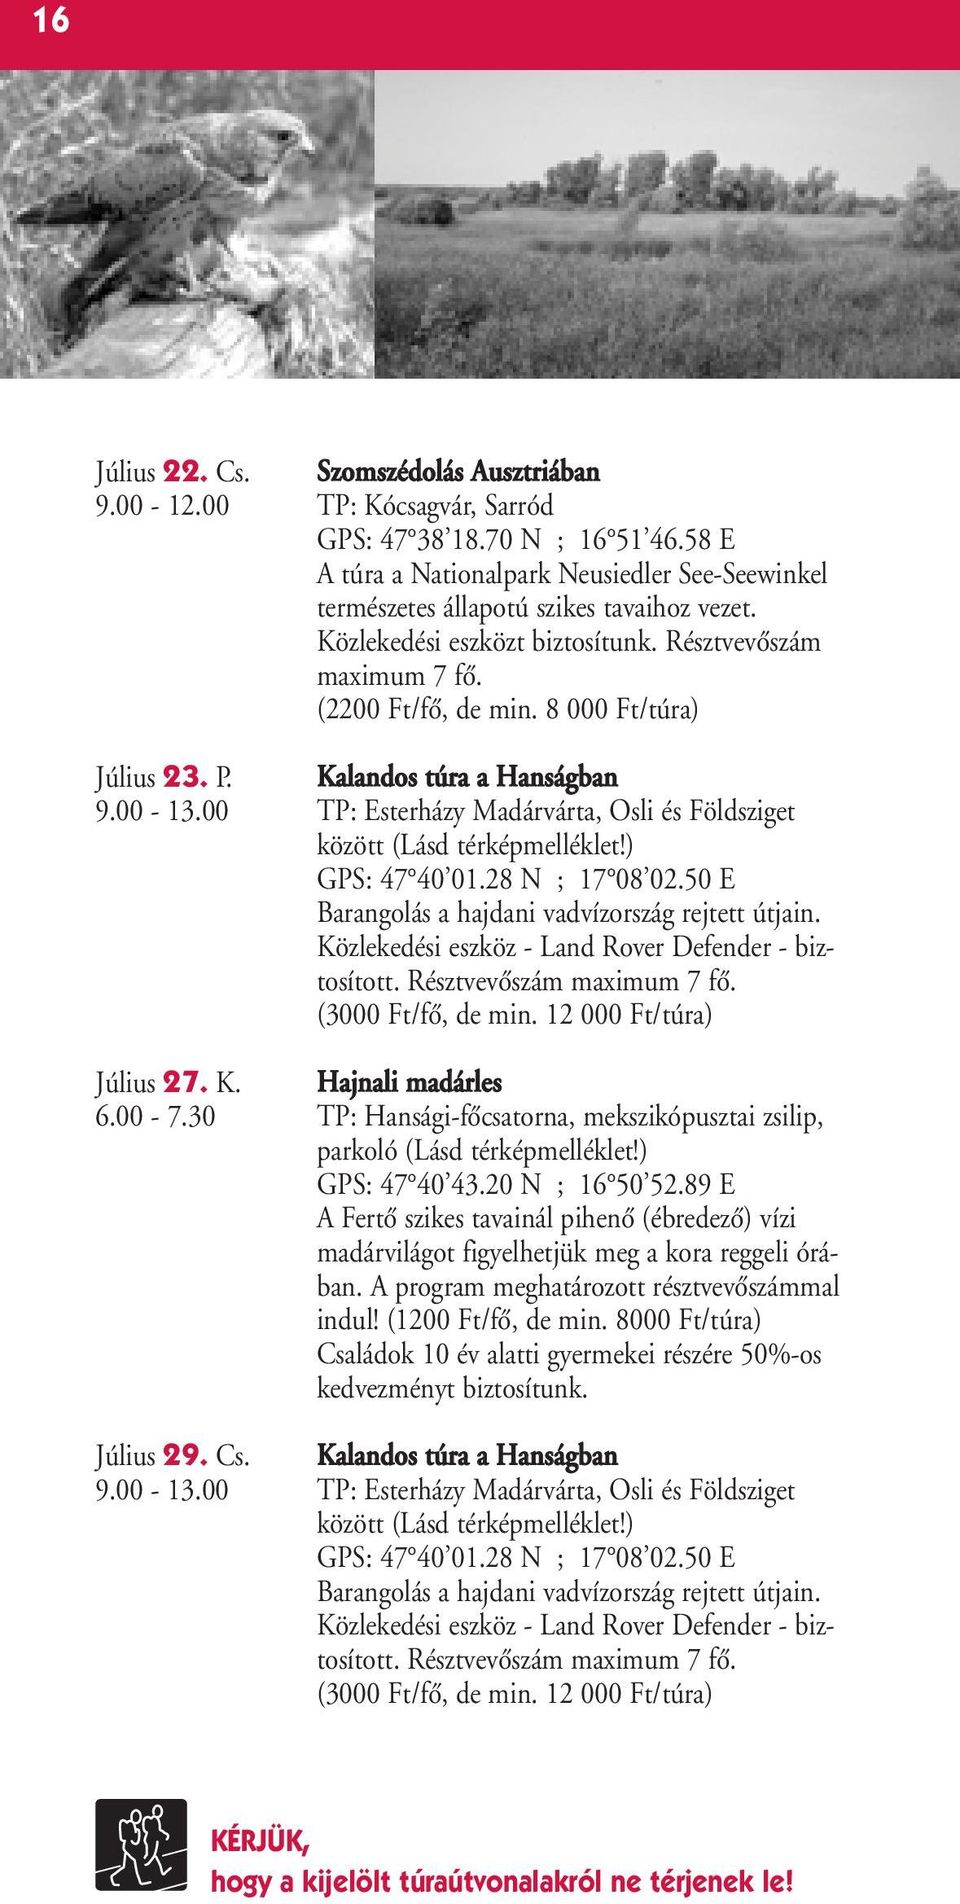 8 000 Ft/túra) Július 23. P. Kalandos túra a Hanságban 9.00-13.00 TP: Esterházy Madárvárta, Osli és Földsziget között (Lásd térképmelléklet!) GPS: 47 40 01.28 N ; 17 08 02.